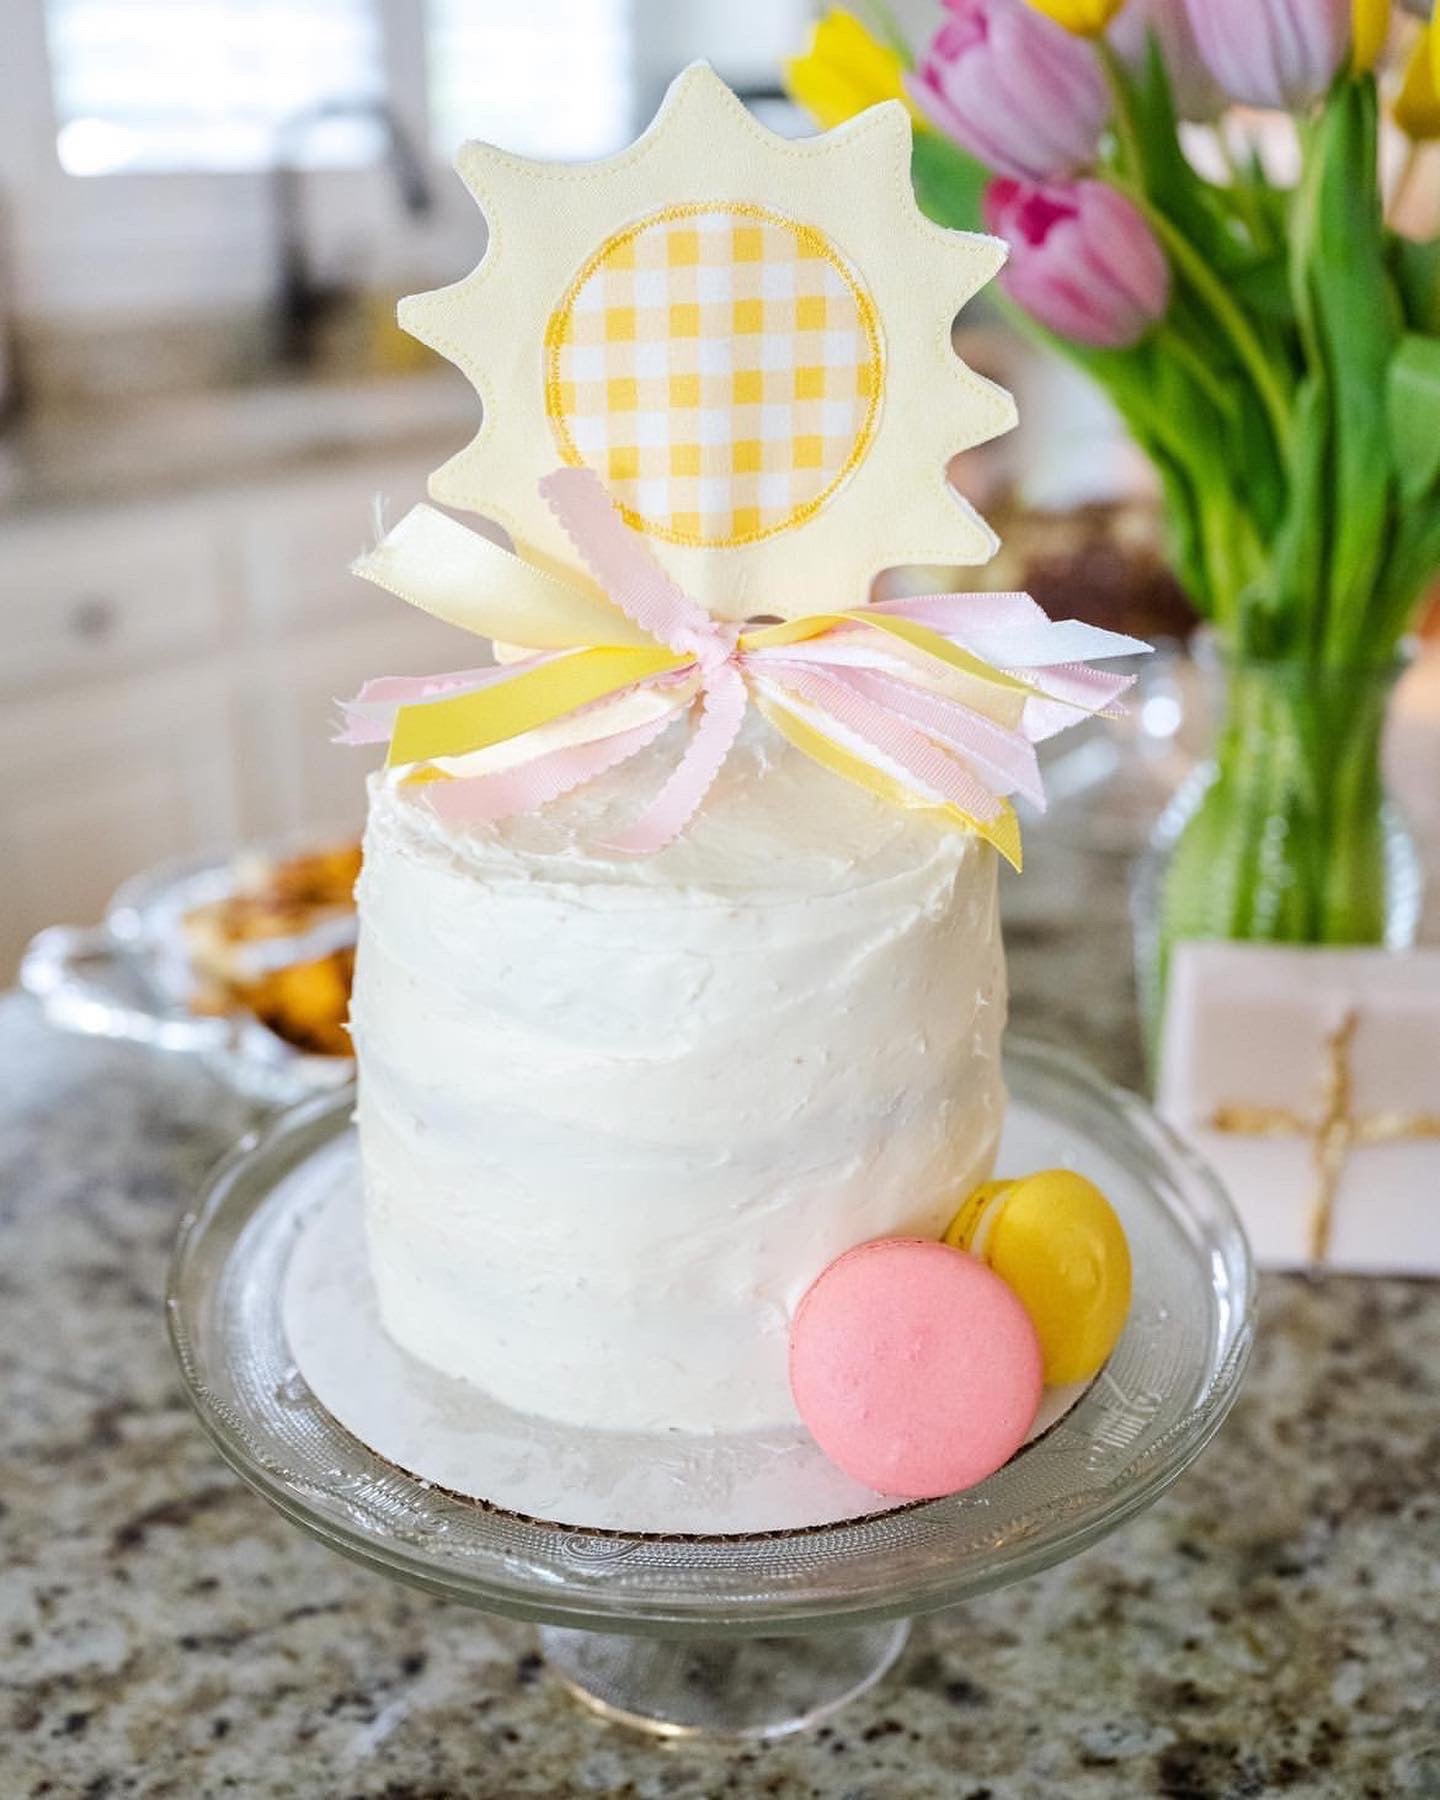 Sunshine birthday cake | Jenny Wenny | Flickr